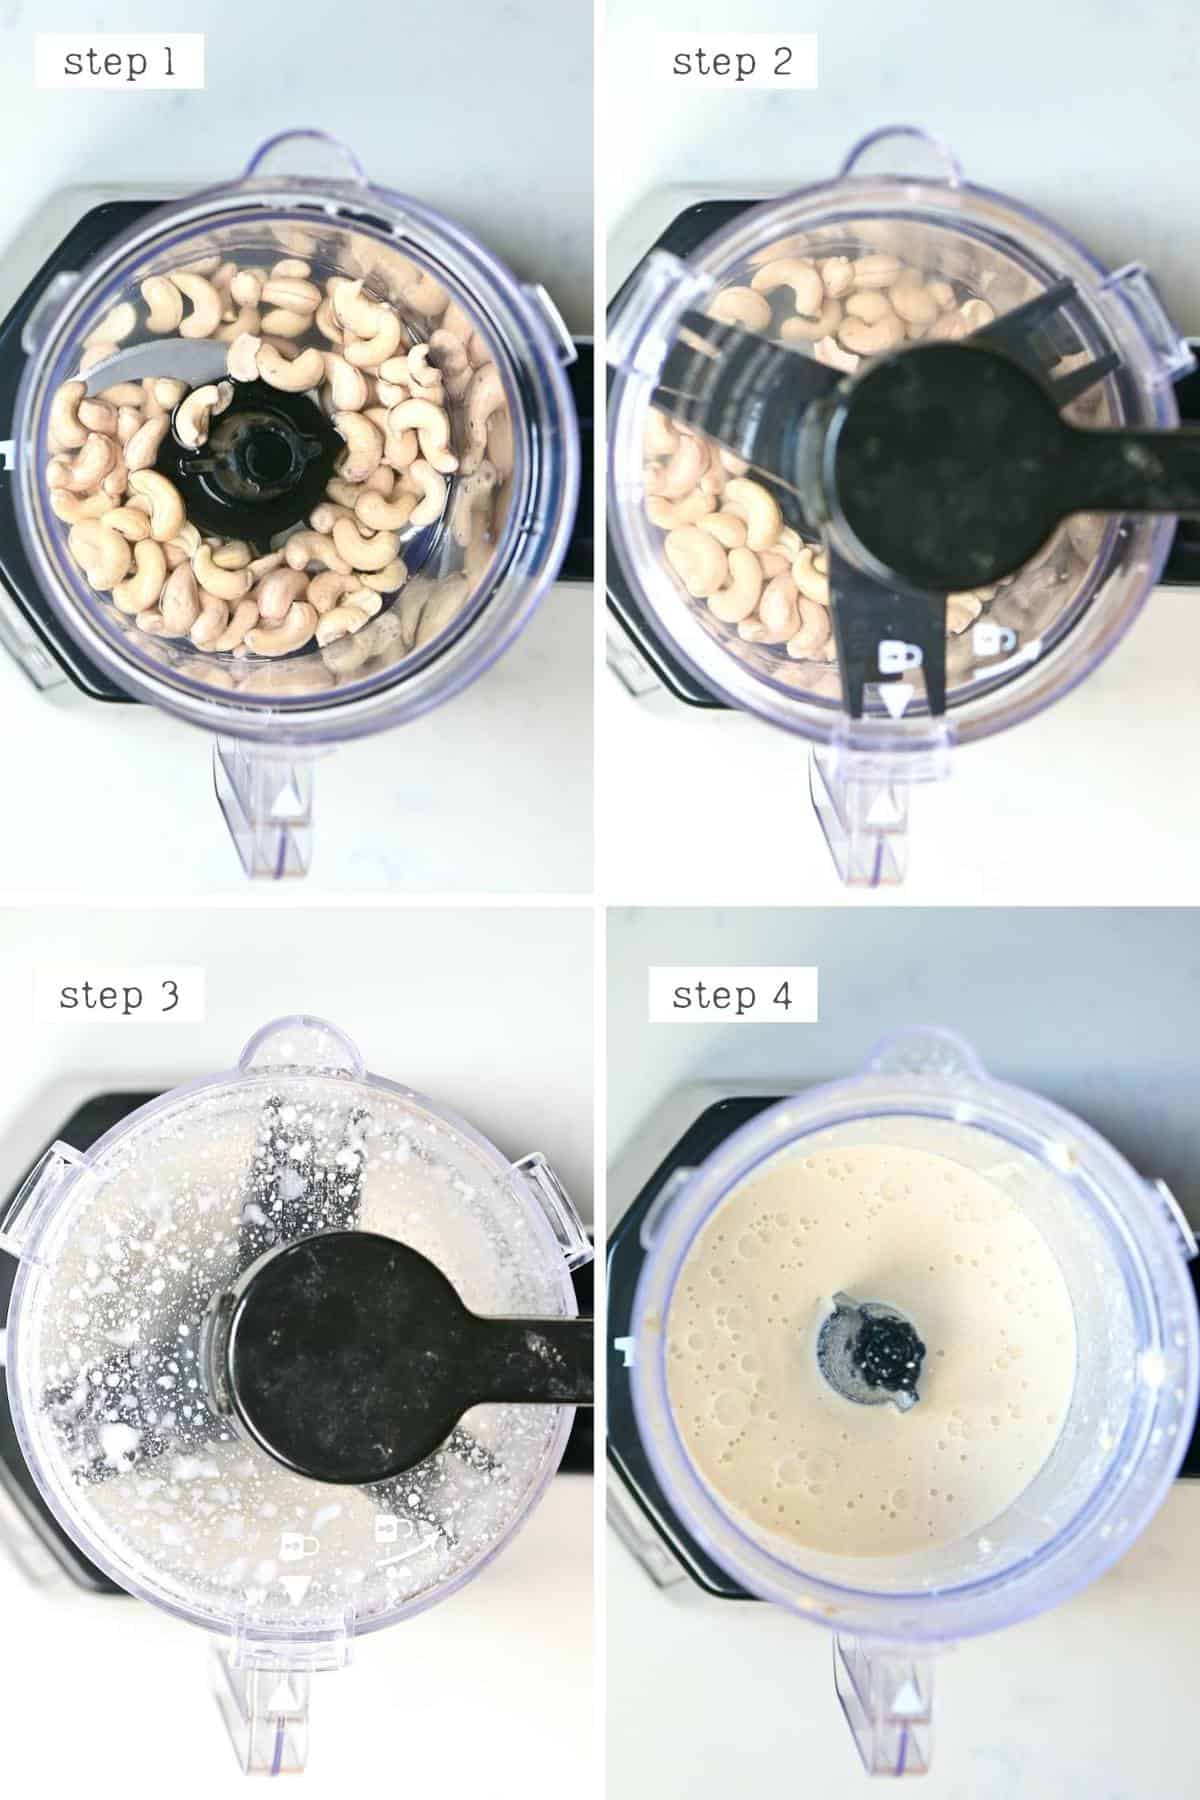 Steps for making cashew creamer